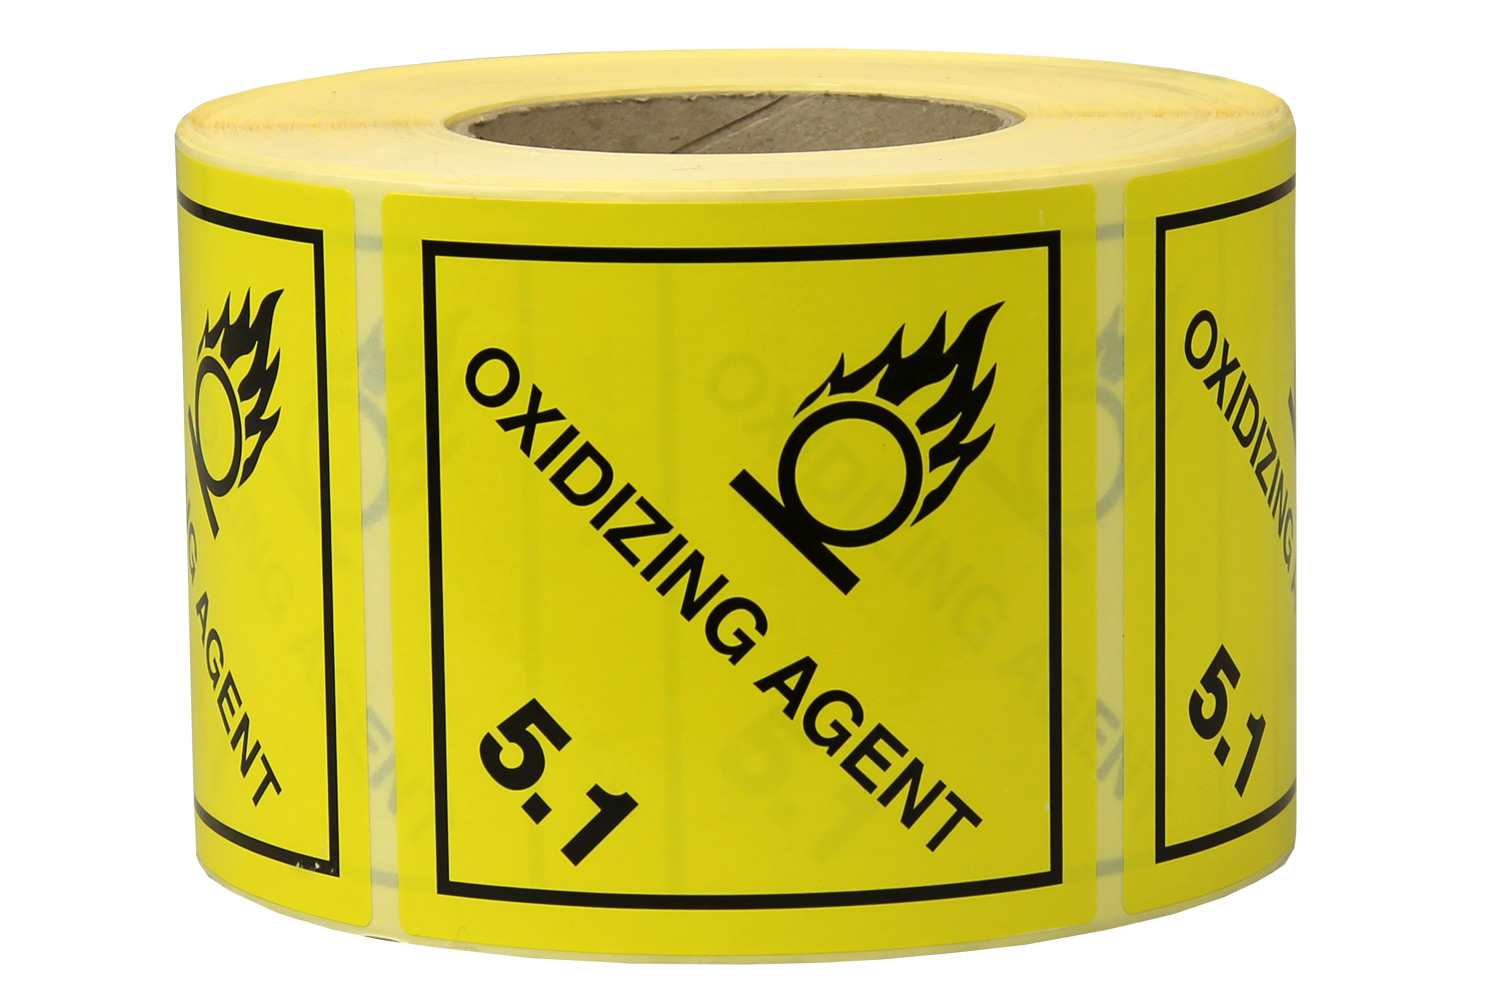 Gefahrgut-Etiketten, 100x100mm, aus Papier, gelb, Oxidizing Agent, Kl. 5.1